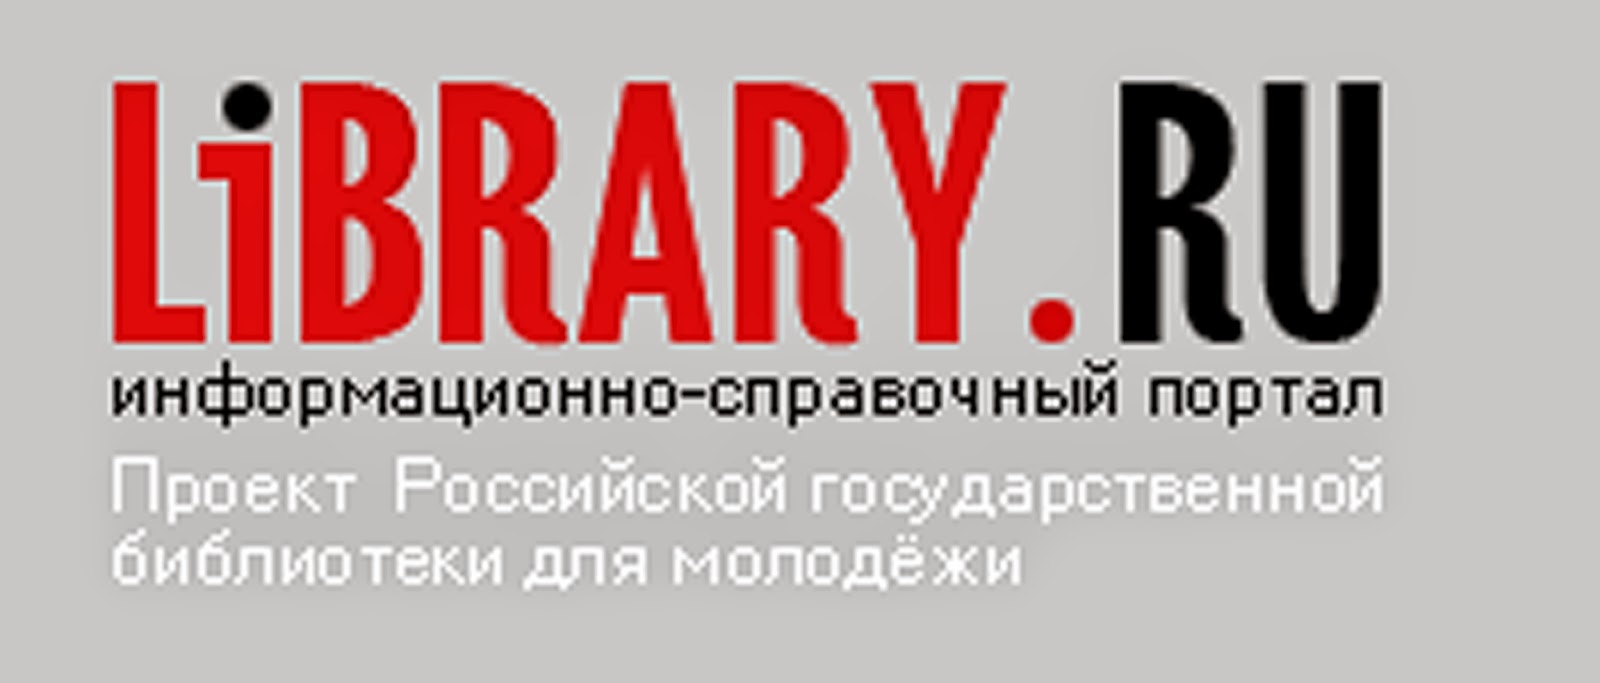 Library ru электронная. Library.ru. Svitk ru библиотека. Библиотека ру. Информационно-справочный портал картинки.